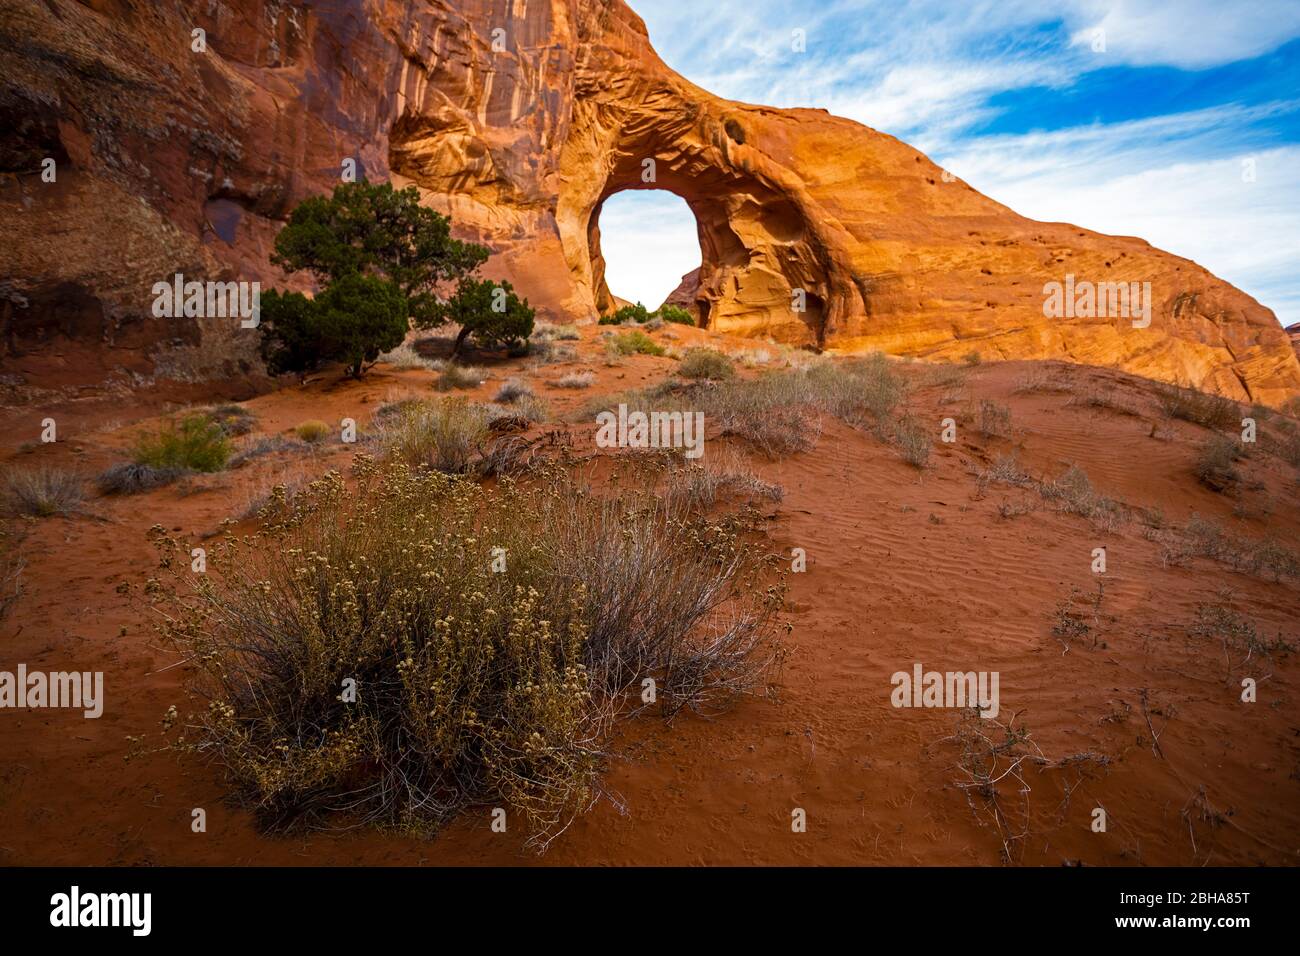 Paysage désertique avec formation naturelle de roc d'arche, Utah, États-Unis Banque D'Images